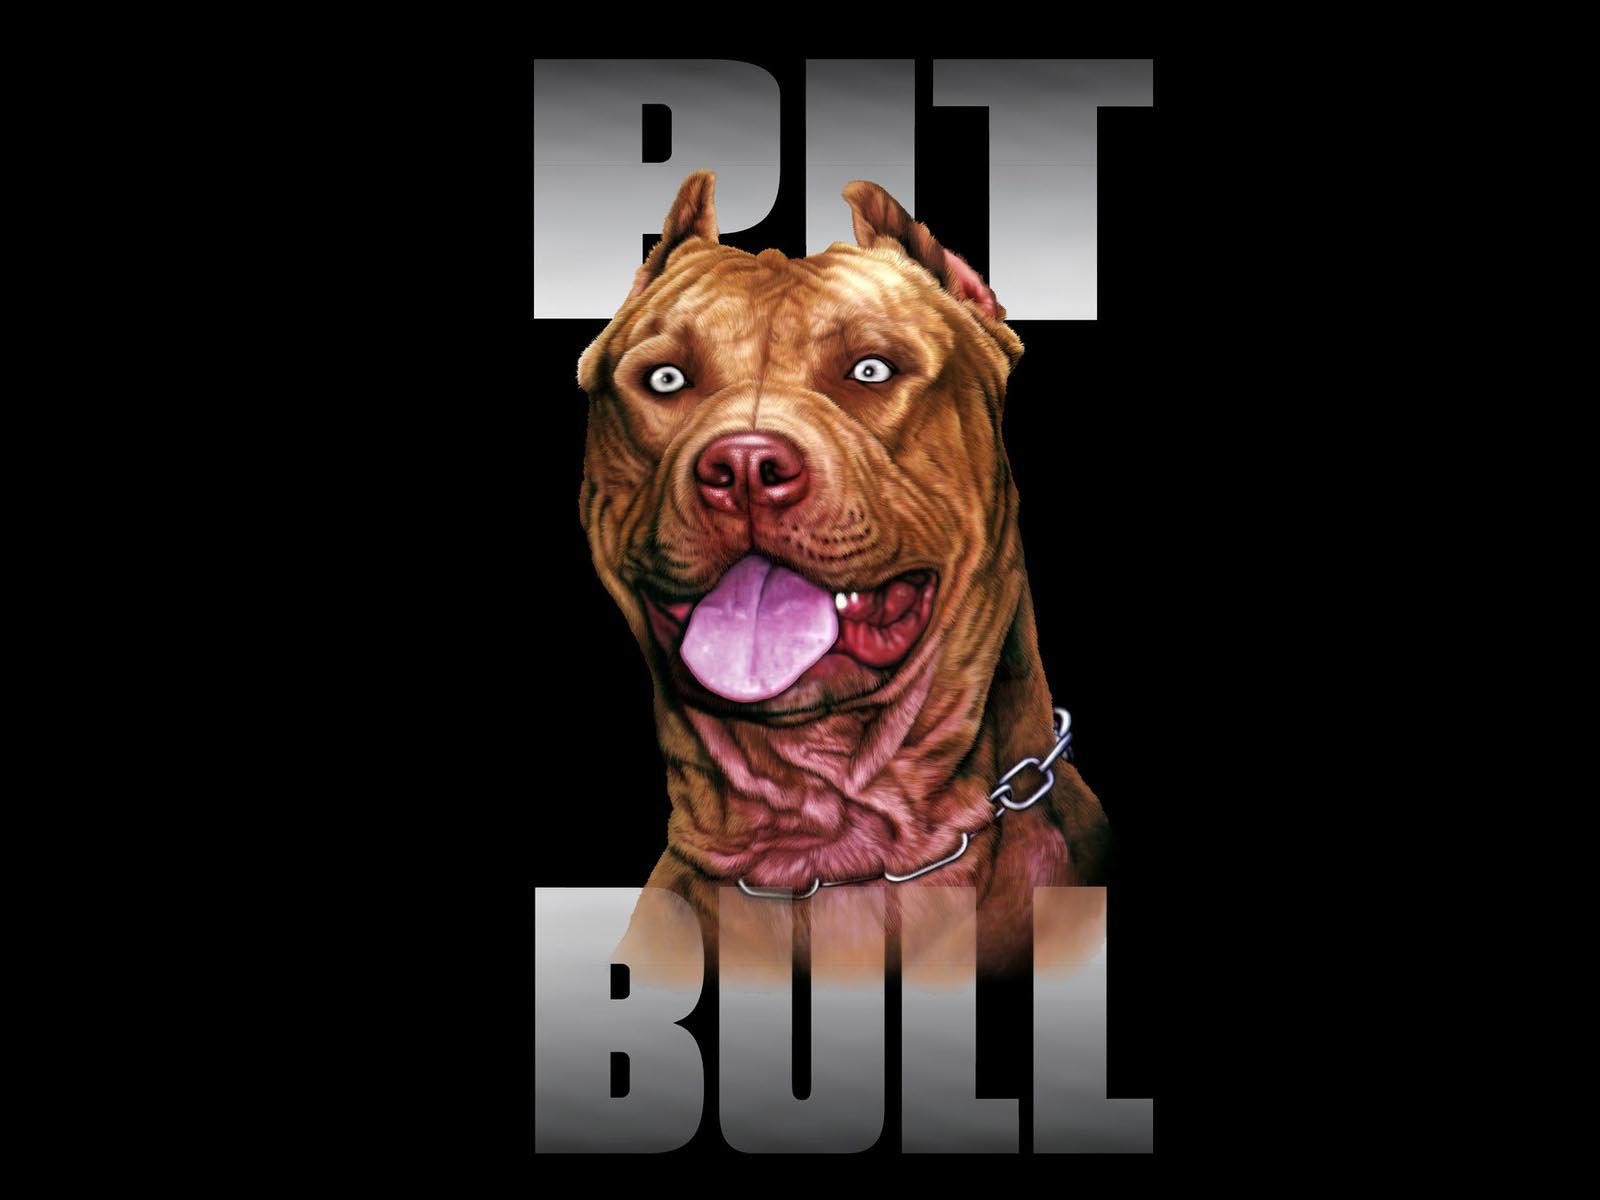 Pit Bull Dog Breed Wallpaper 1600x1200PX American Pit Bull